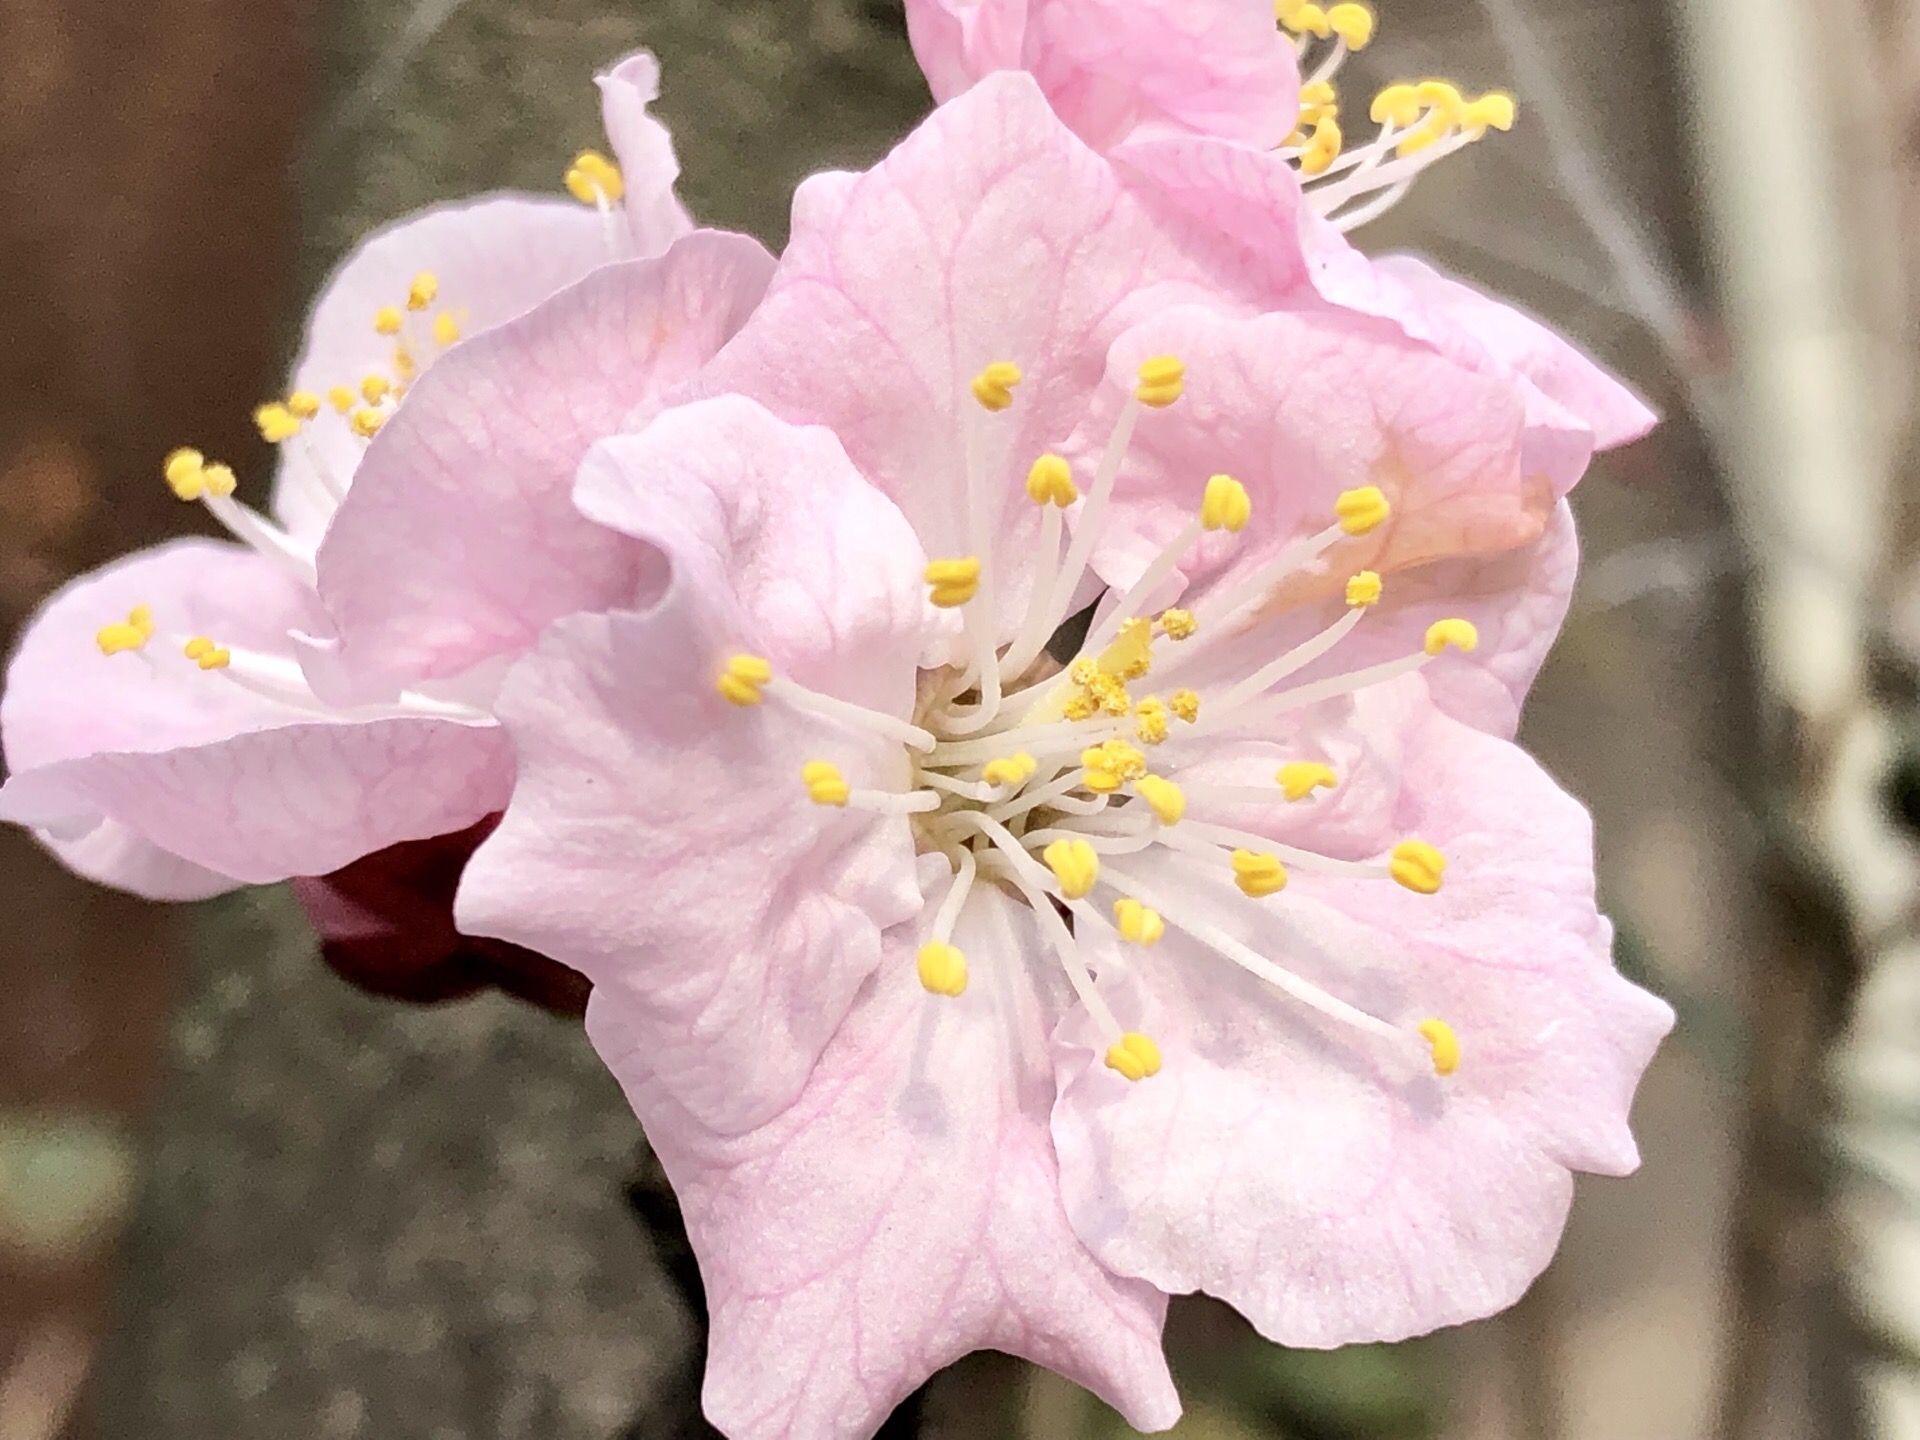 粉樱仙子灿烂登门  今年日本樱花提前开放，街边樱花粉墨登场 又到一年樱花季